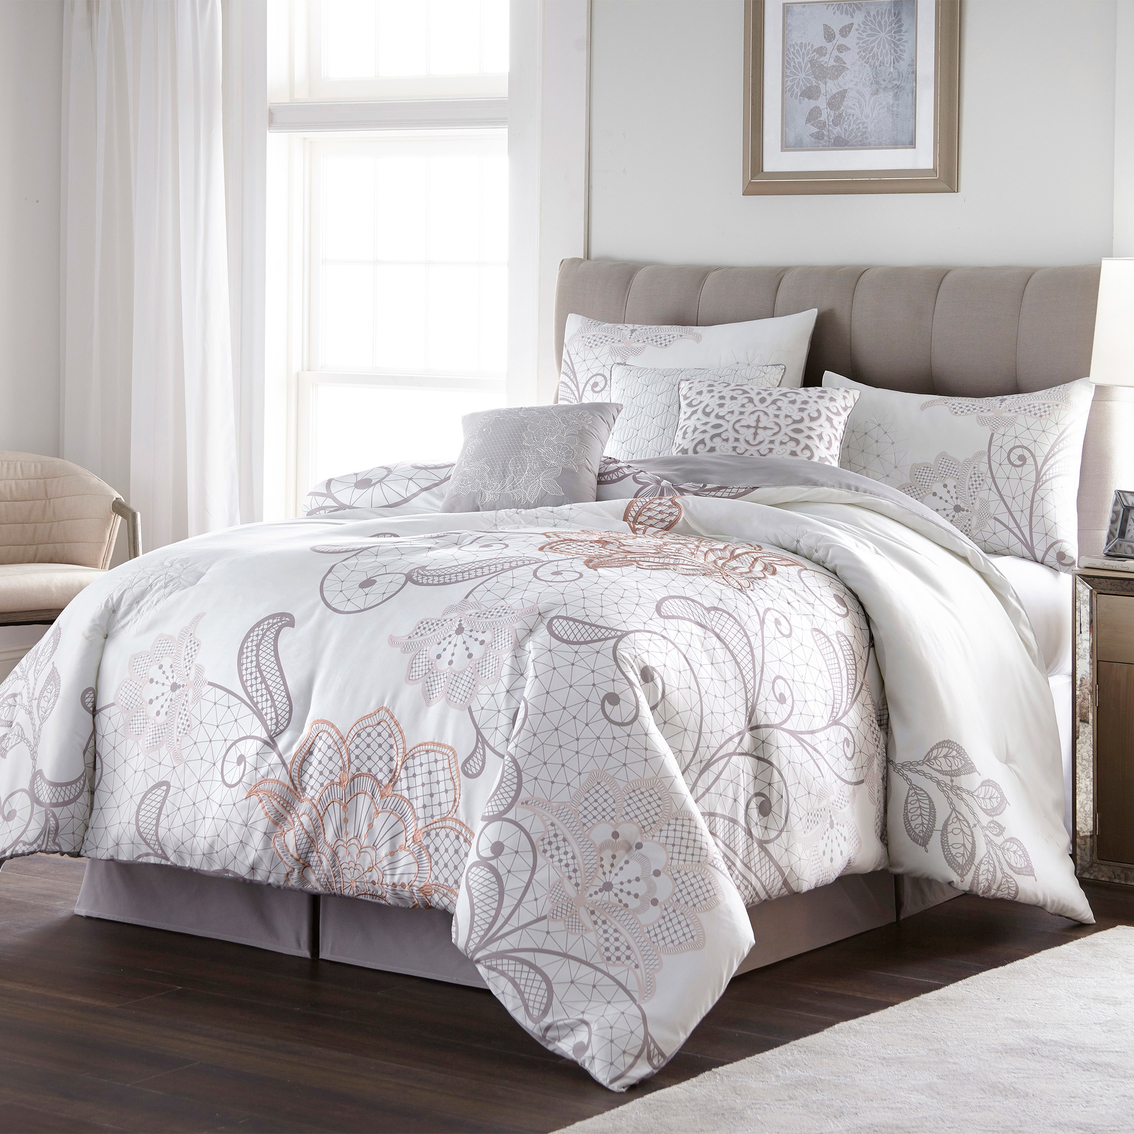 Nanshing America Lucinda Lace 7 Pc. Comforter Set | Bedding Sets ...